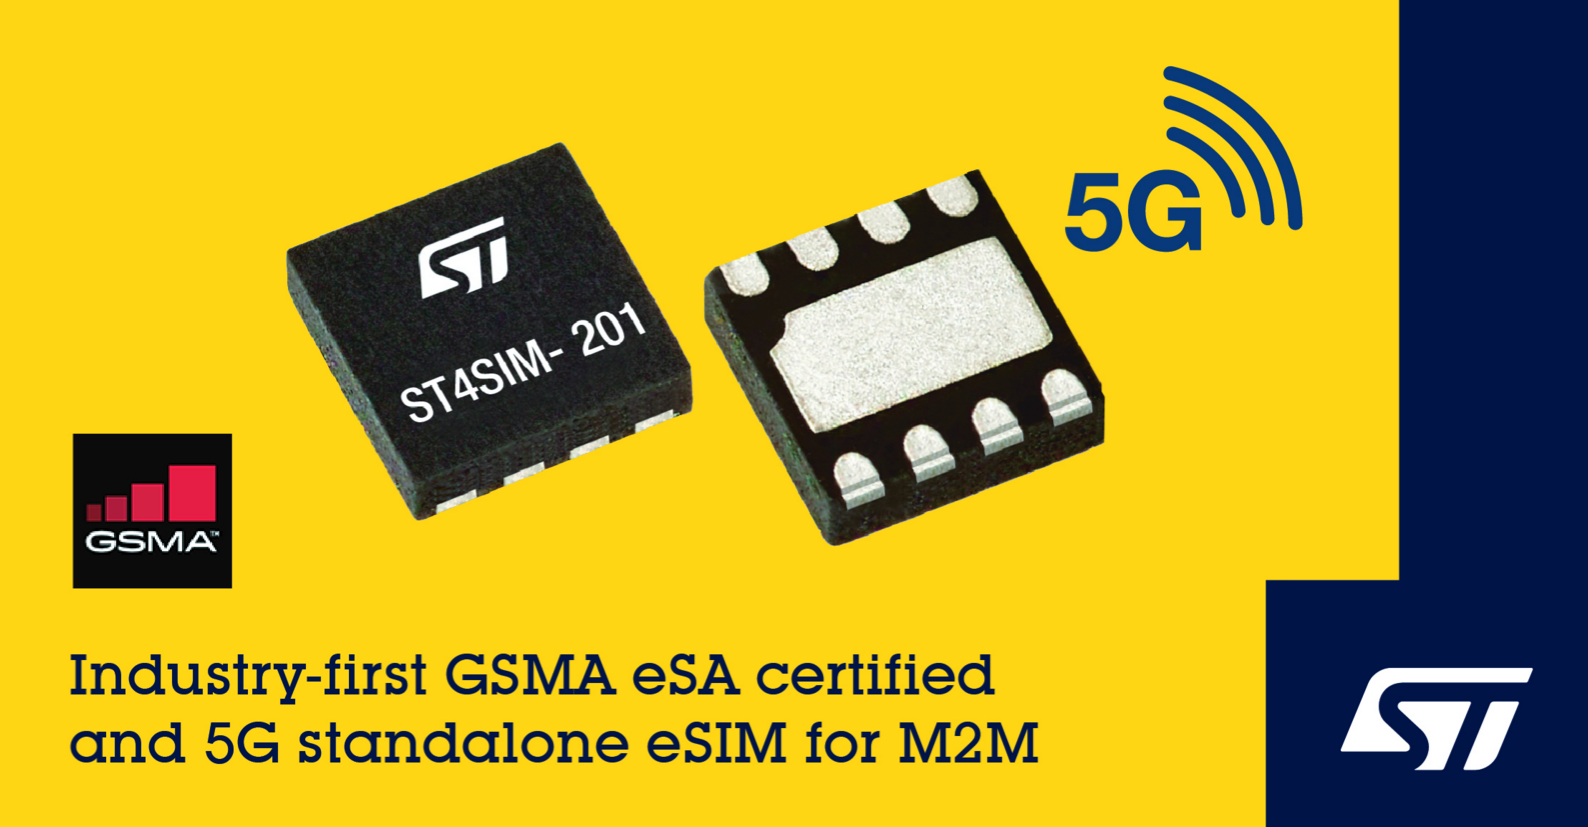 意法半導體5G M2M 嵌入式SIM卡芯片通過最新GSMA eSA(安全保障)認證 